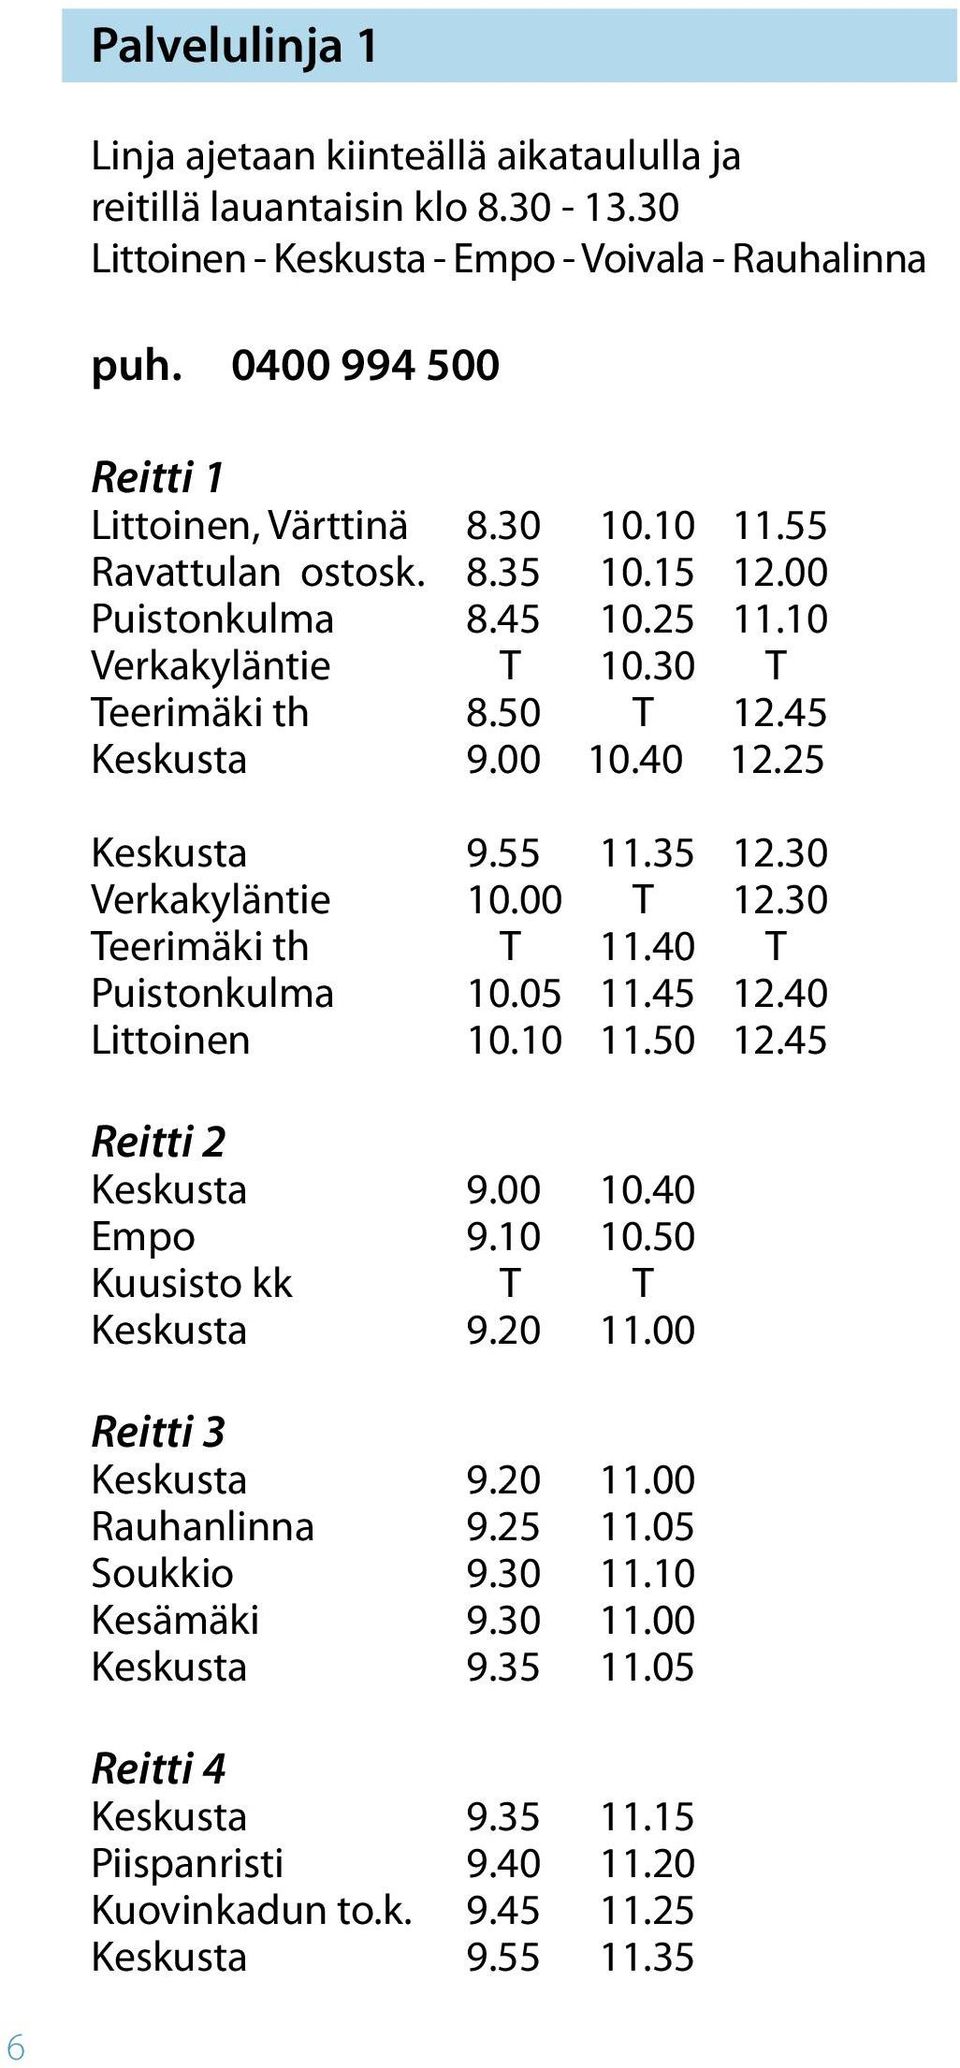 30 Verkakyläntie 10.00 T 12.30 Teerimäki th T 11.40 T Puistonkulma 10.05 11.45 12.40 Littoinen 10.10 11.50 12.45 Reitti 2 Keskusta 9.00 10.40 Empo 9.10 10.50 Kuusisto kk T T Keskusta 9.20 11.